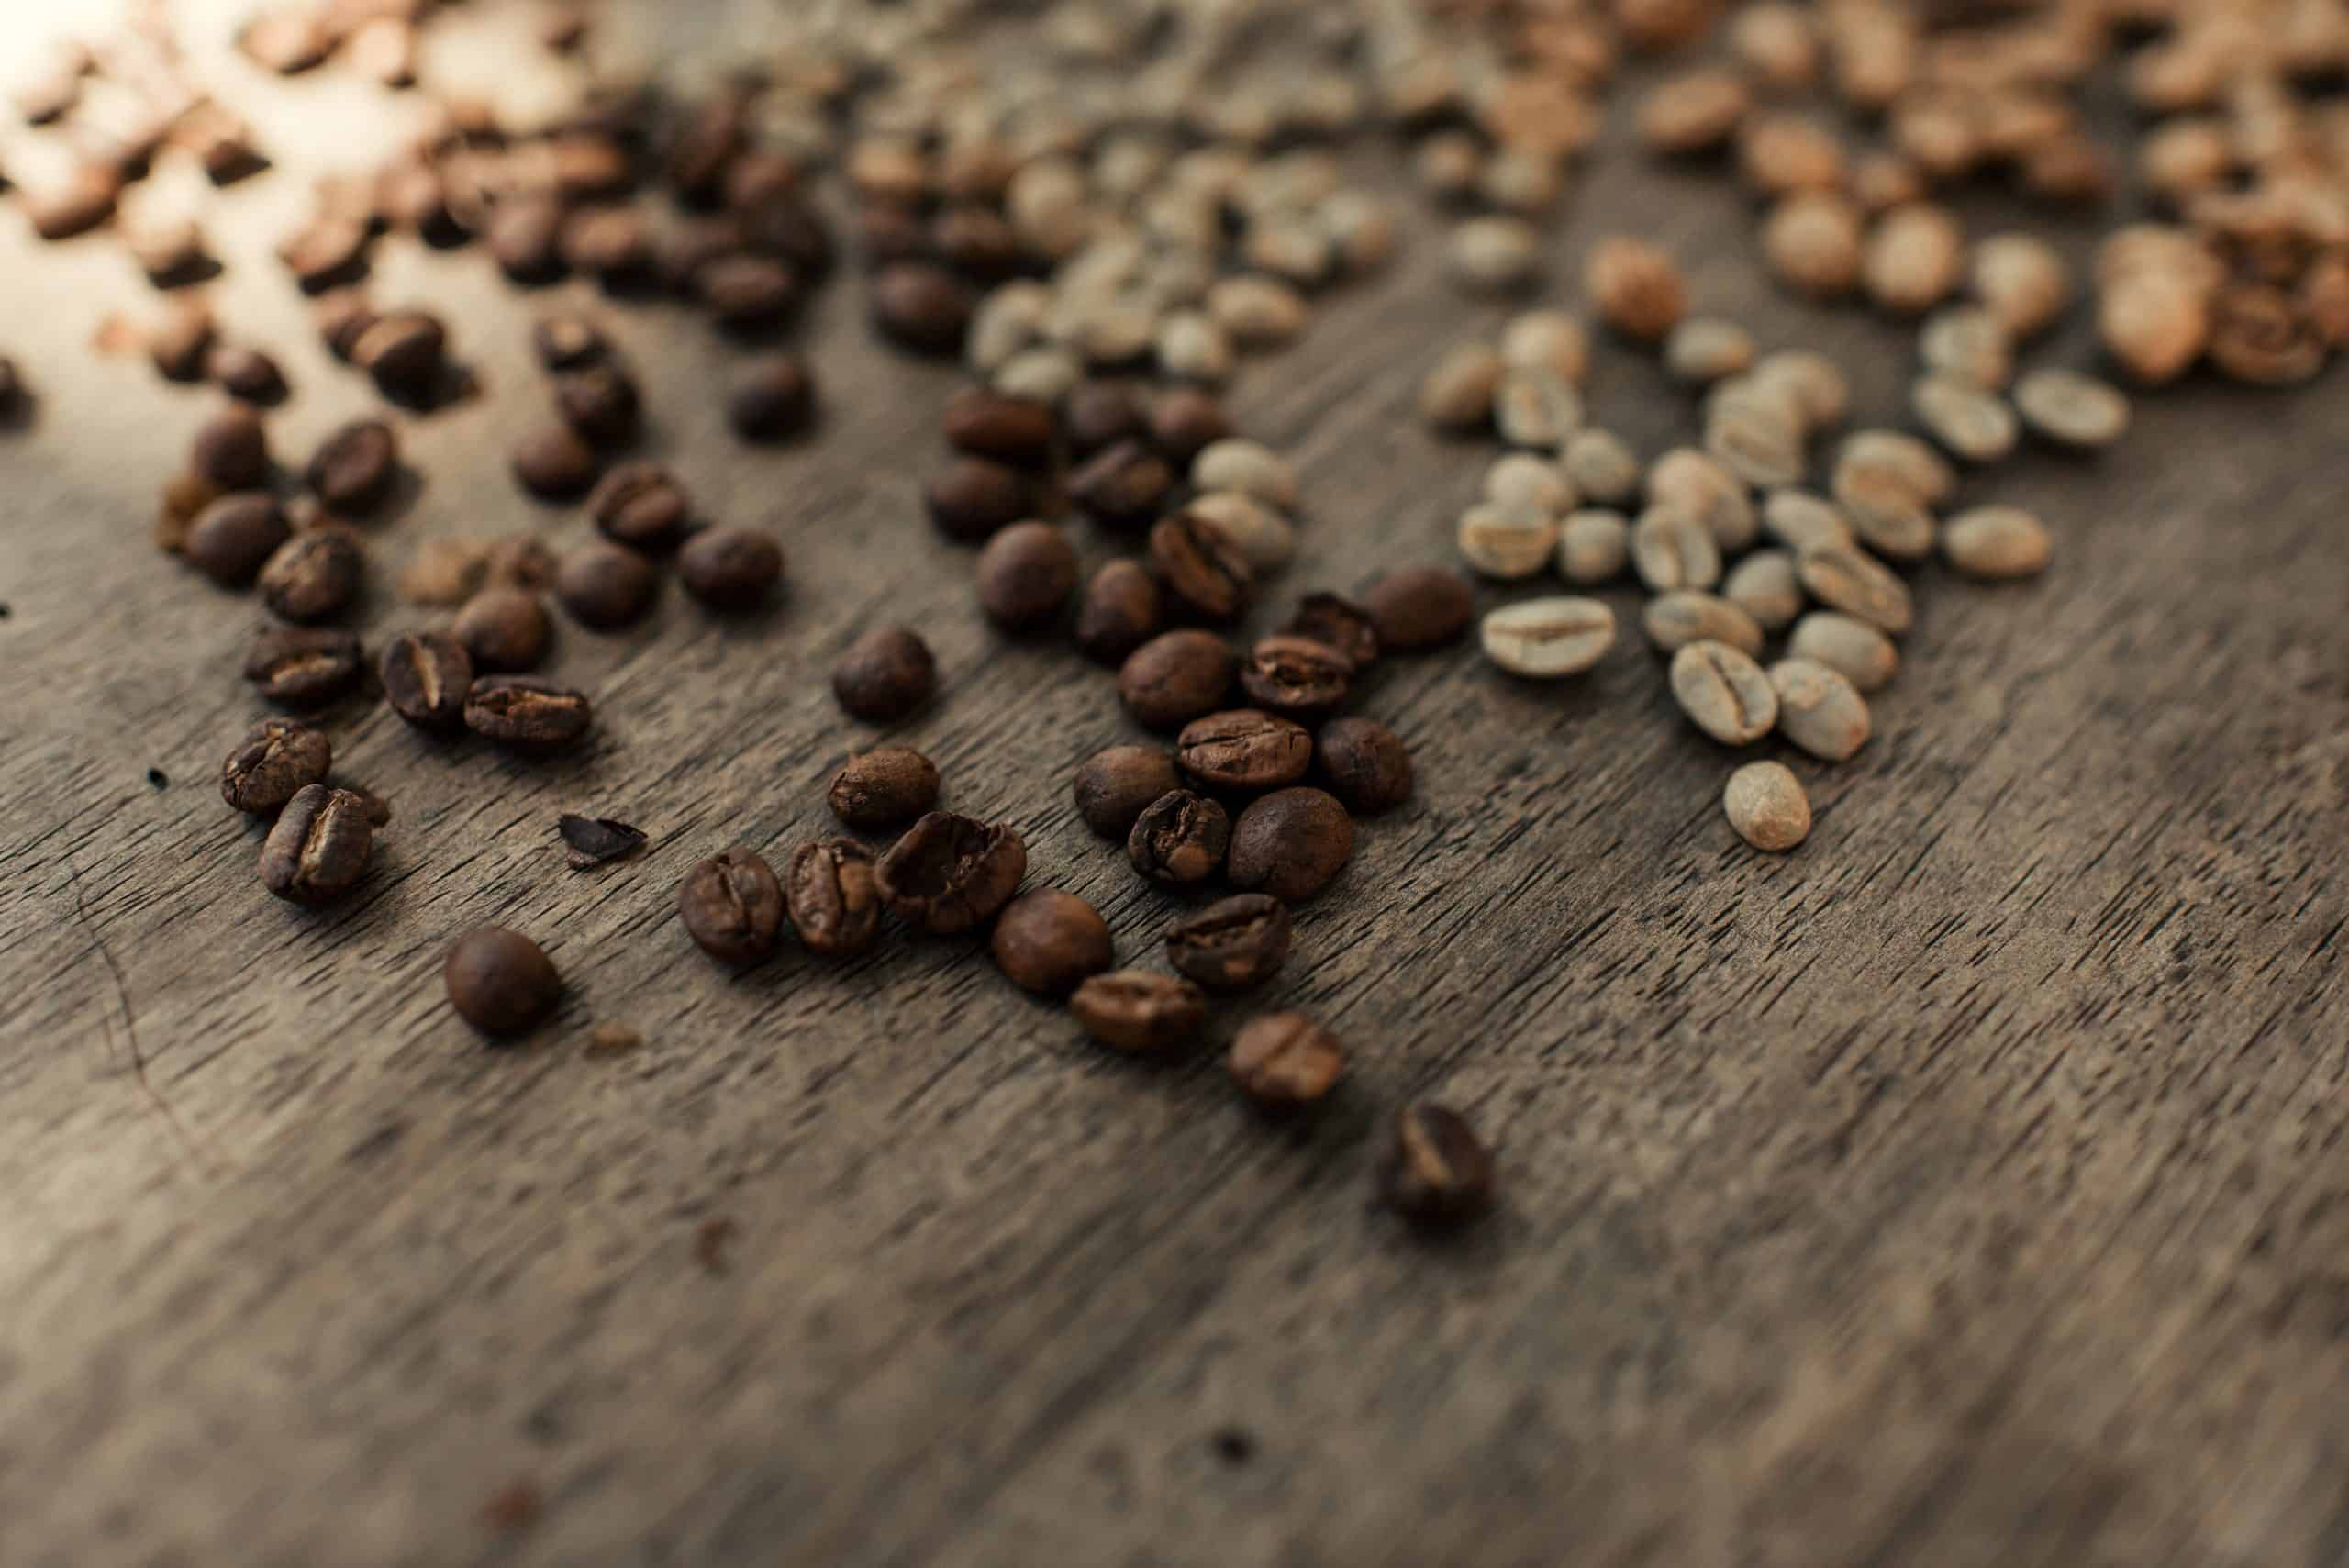 Guia completo do café conilon especial, do cultivo ao consumo